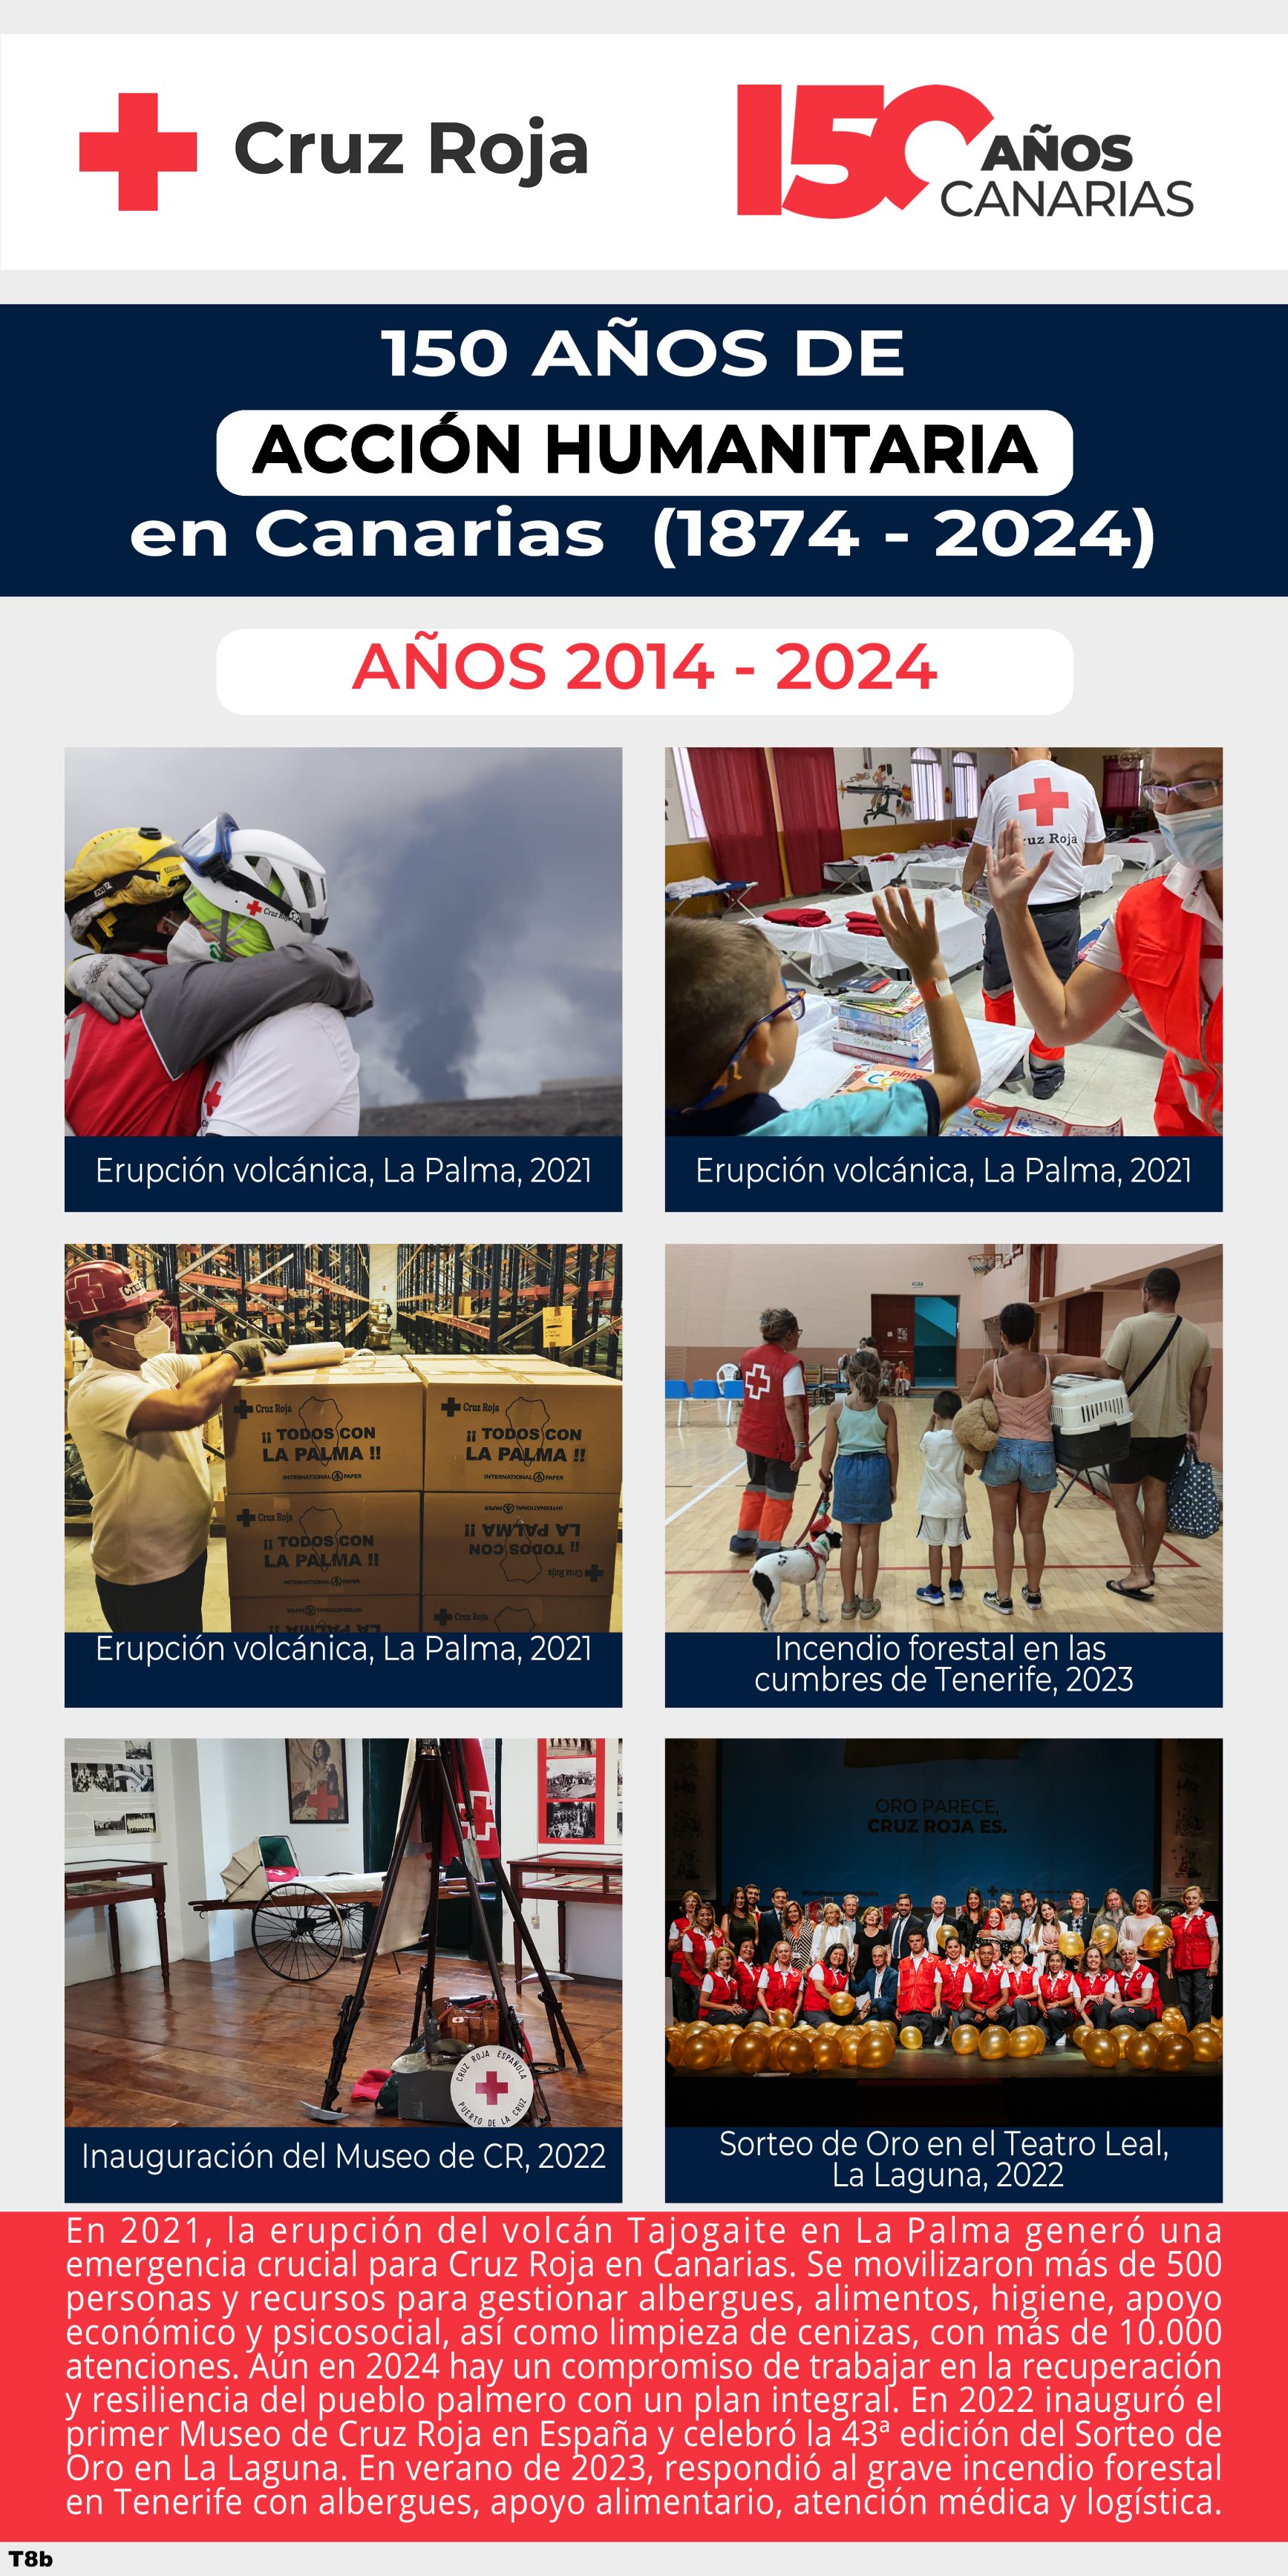 En 2021, la erupción del volcán Tajogaite en La Palma generó una emergencia crucial para Cruz Roja en Canarias. Se movilizaron más de 500 personas y recursos para gestionar albergues, alimentos, higiene, apoyo económico y psicosocial, así como limpieza de cenizas, con más de 10.000 atenciones. Aún en 2024 hay un compromiso de trabajar en la recuperación y resiliencia del pueblo palmero con un plan integral. En 2022 inauguró el primer Museo de Cruz Roja en España y celebró la 43ª edición del Sorteo de Oro en La Laguna. En verano de 2023, respondió al grave incendio forestal en Tenerife con albergues, apoyo alimentario, atención médica y logística.